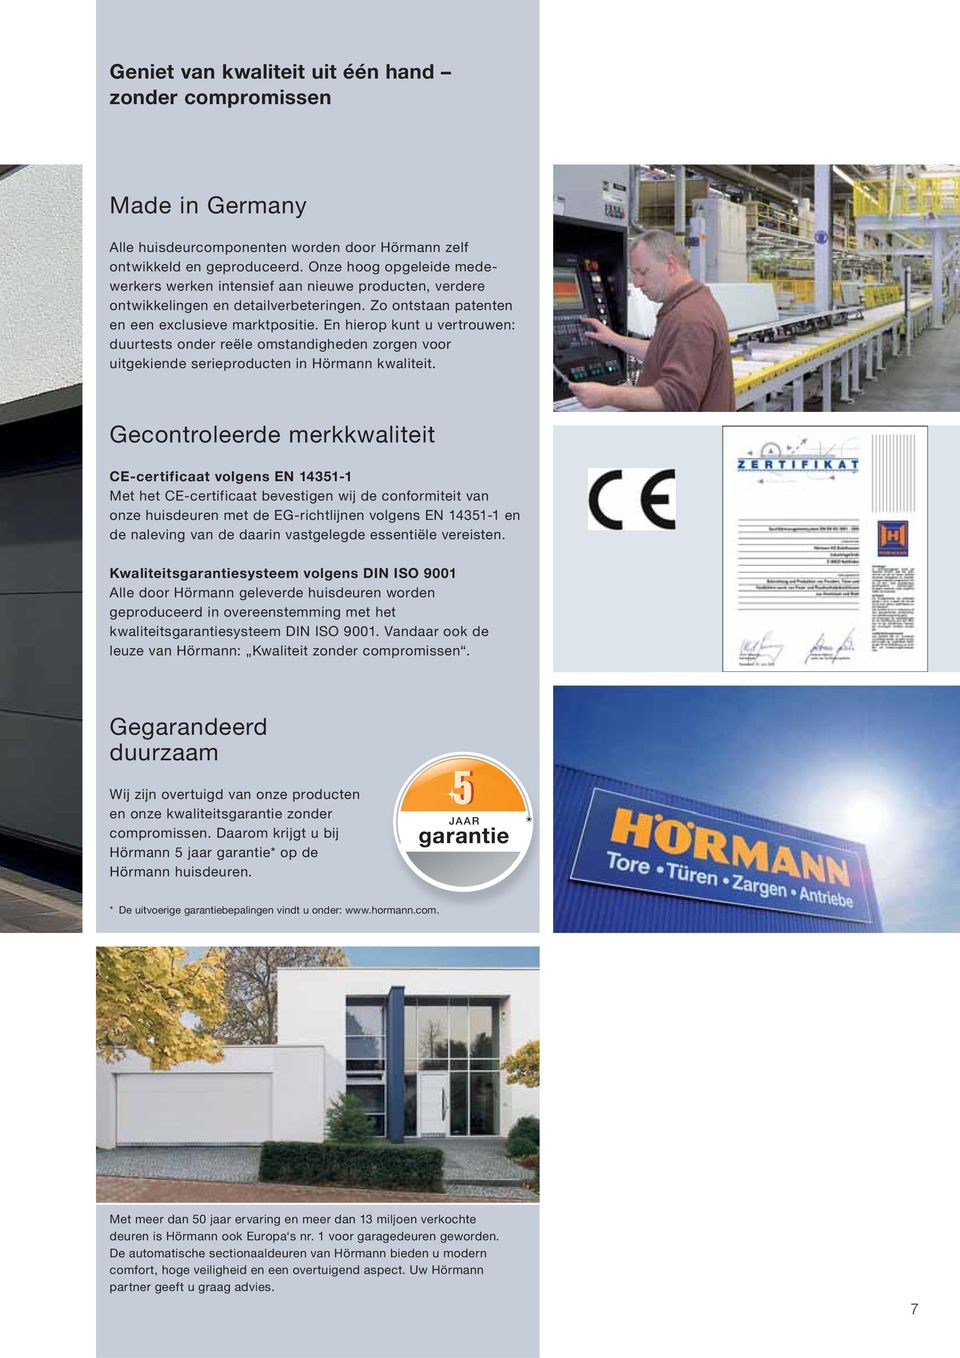 En hierop kunt u vertrouwen: duurtests onder reële omstandigheden zorgen voor uitgekiende serieproducten in Hörmann kwaliteit.